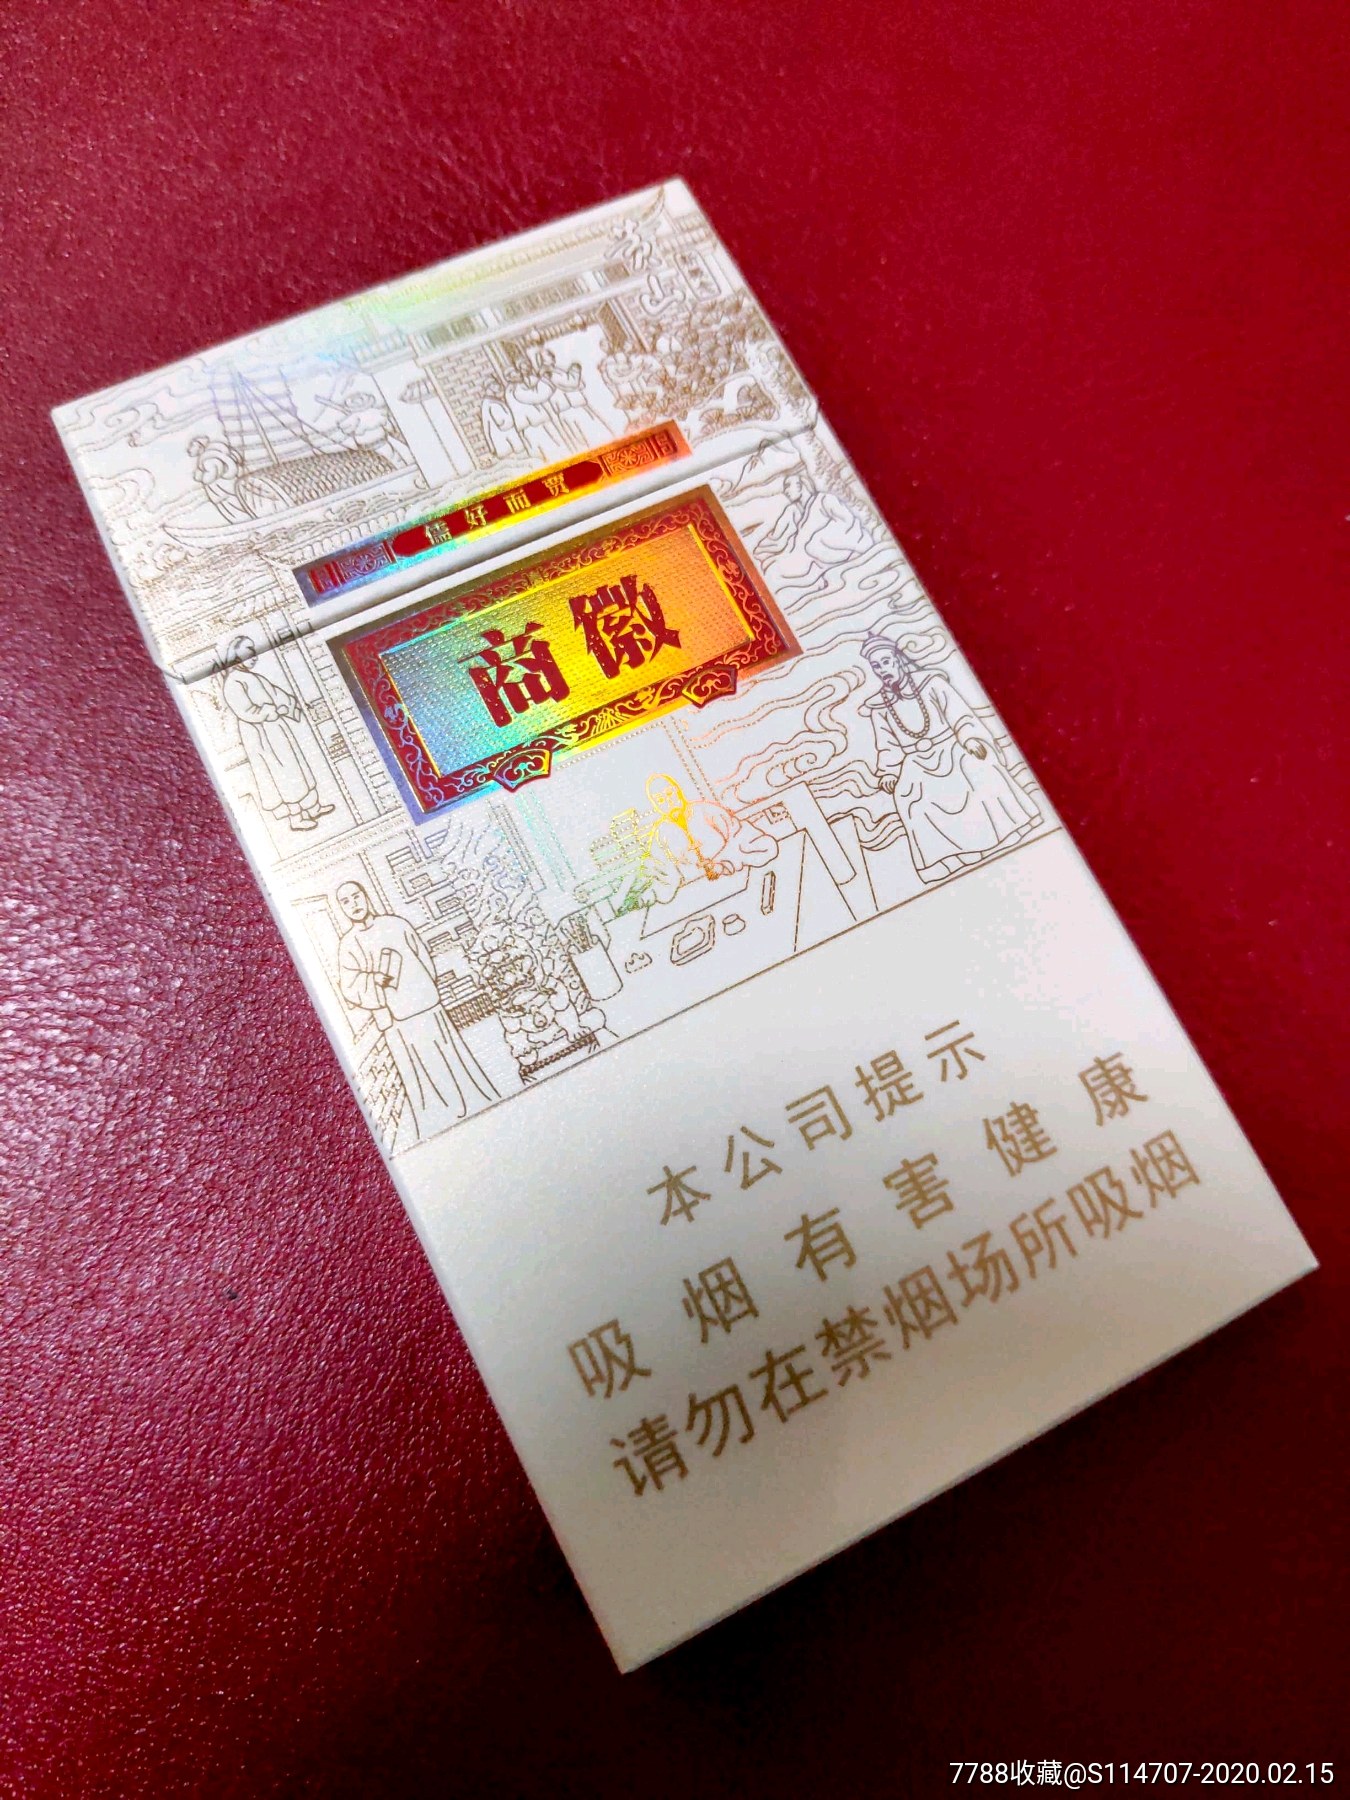 500元黄徽商香烟图片图片